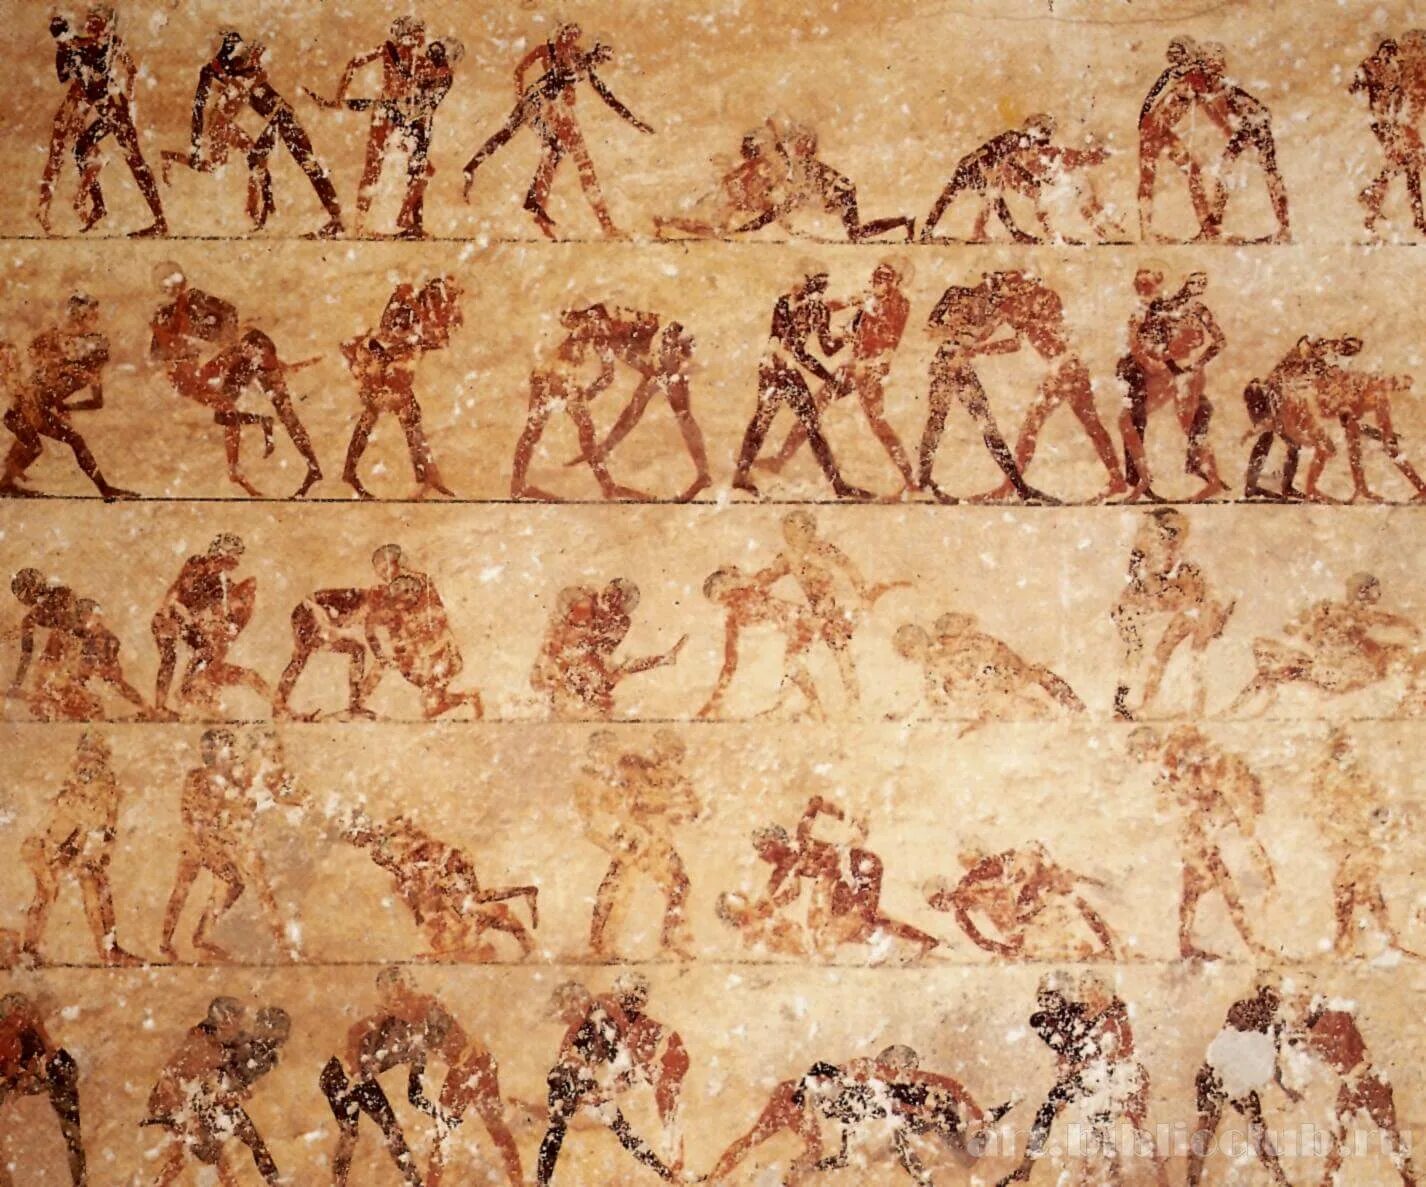 Кулачные бои в древнем Египте. Египет спорт в древности спорт. Кулачные бои в Египте на фреске. Физическая культура в Египте.